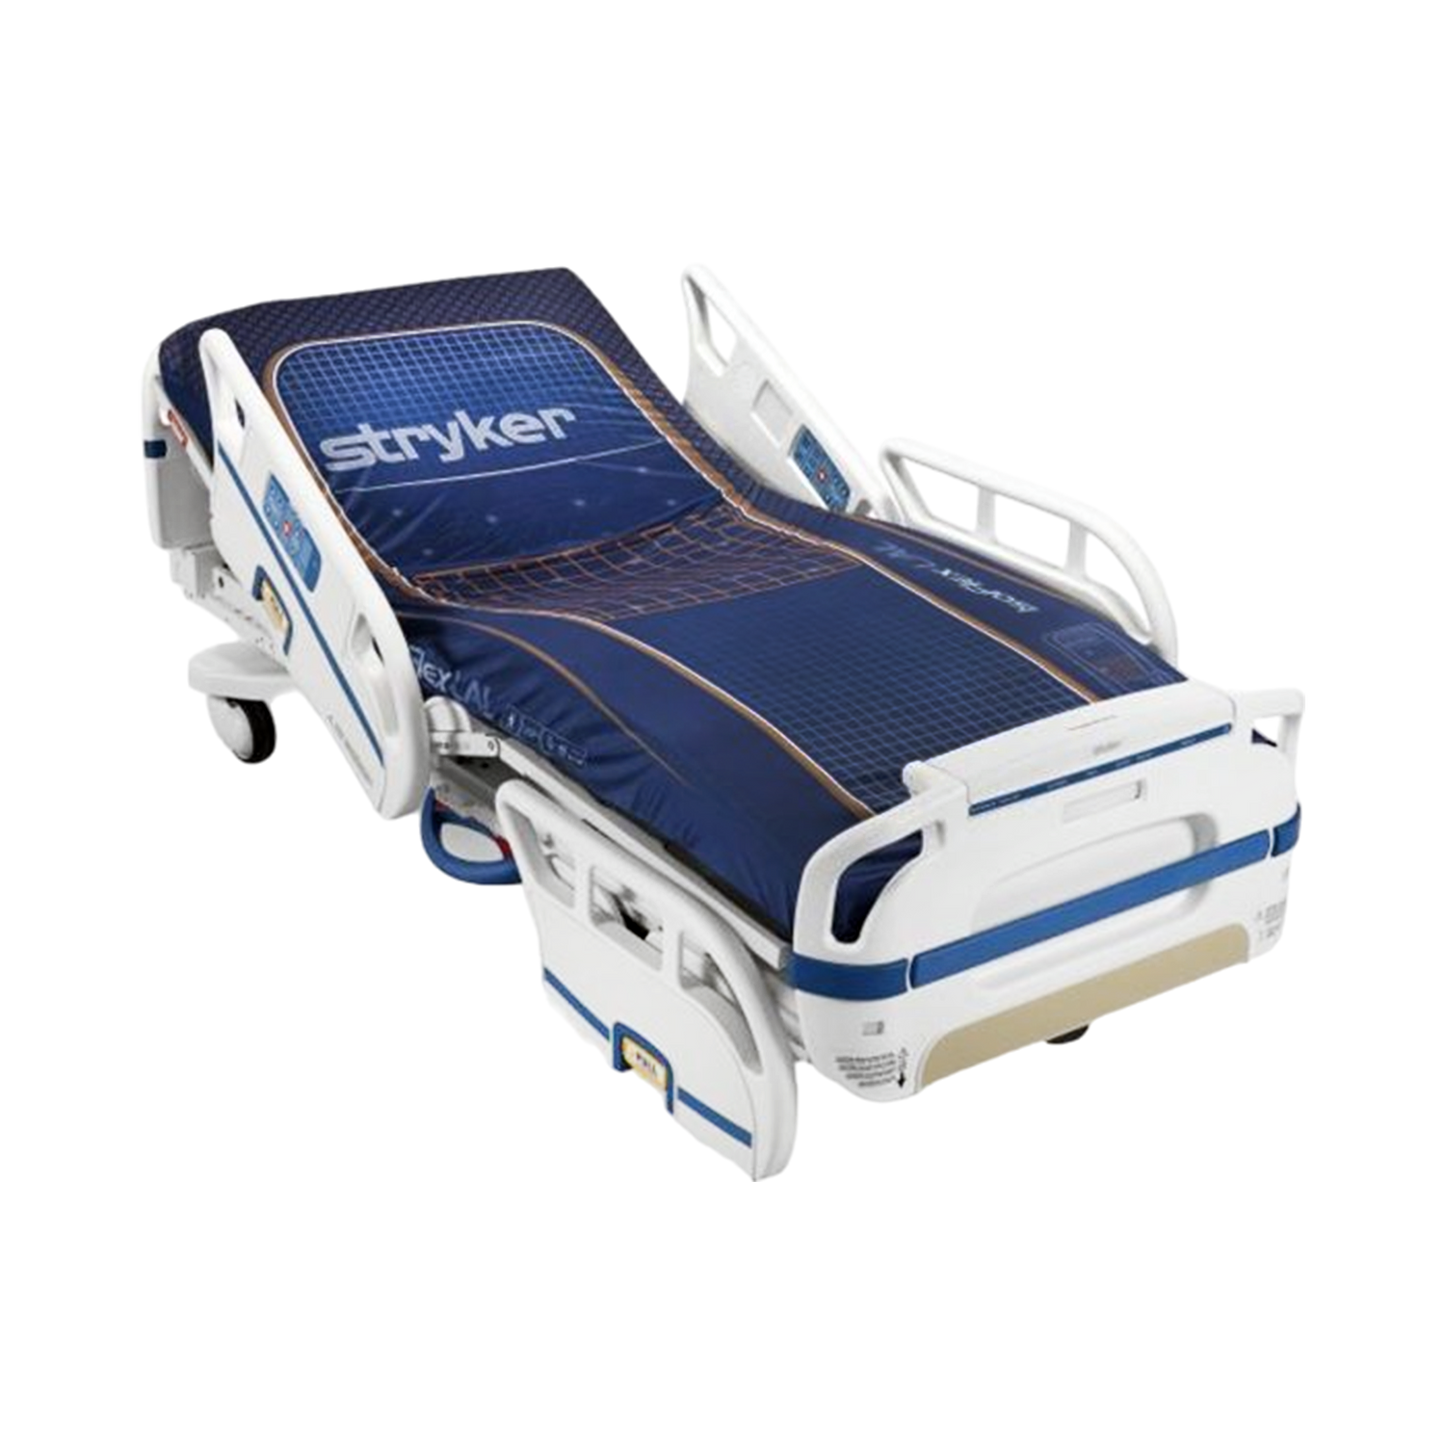 Stryker 3005-S3 Med-Surg Hospital Bed w/ StayPut Frame